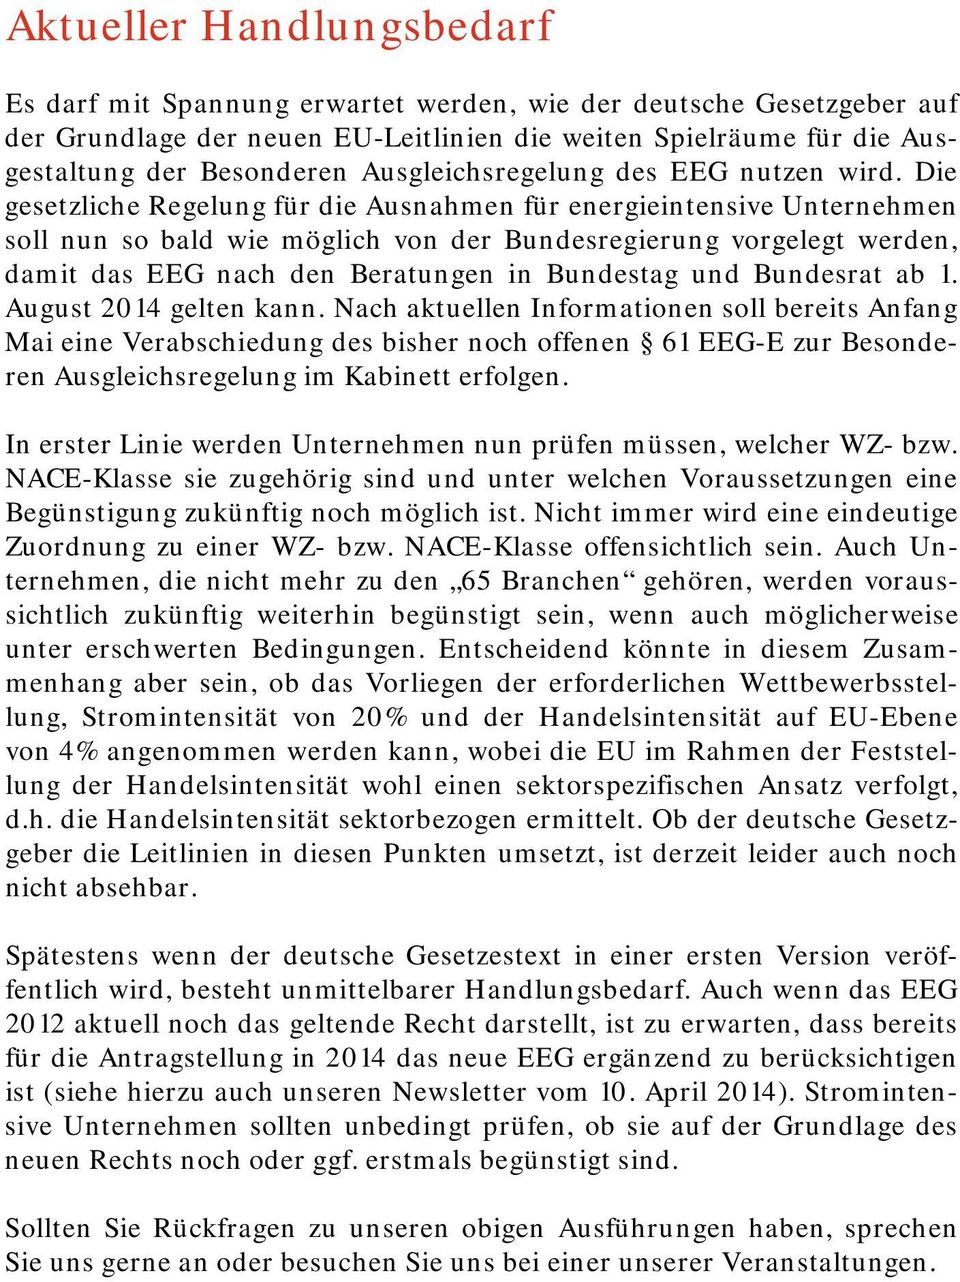 Die gesetzliche Regelung für die Ausnahmen für energieintensive Unternehmen soll nun so bald wie möglich von der Bundesregierung vorgelegt werden, damit das EEG nach den Beratungen in Bundestag und